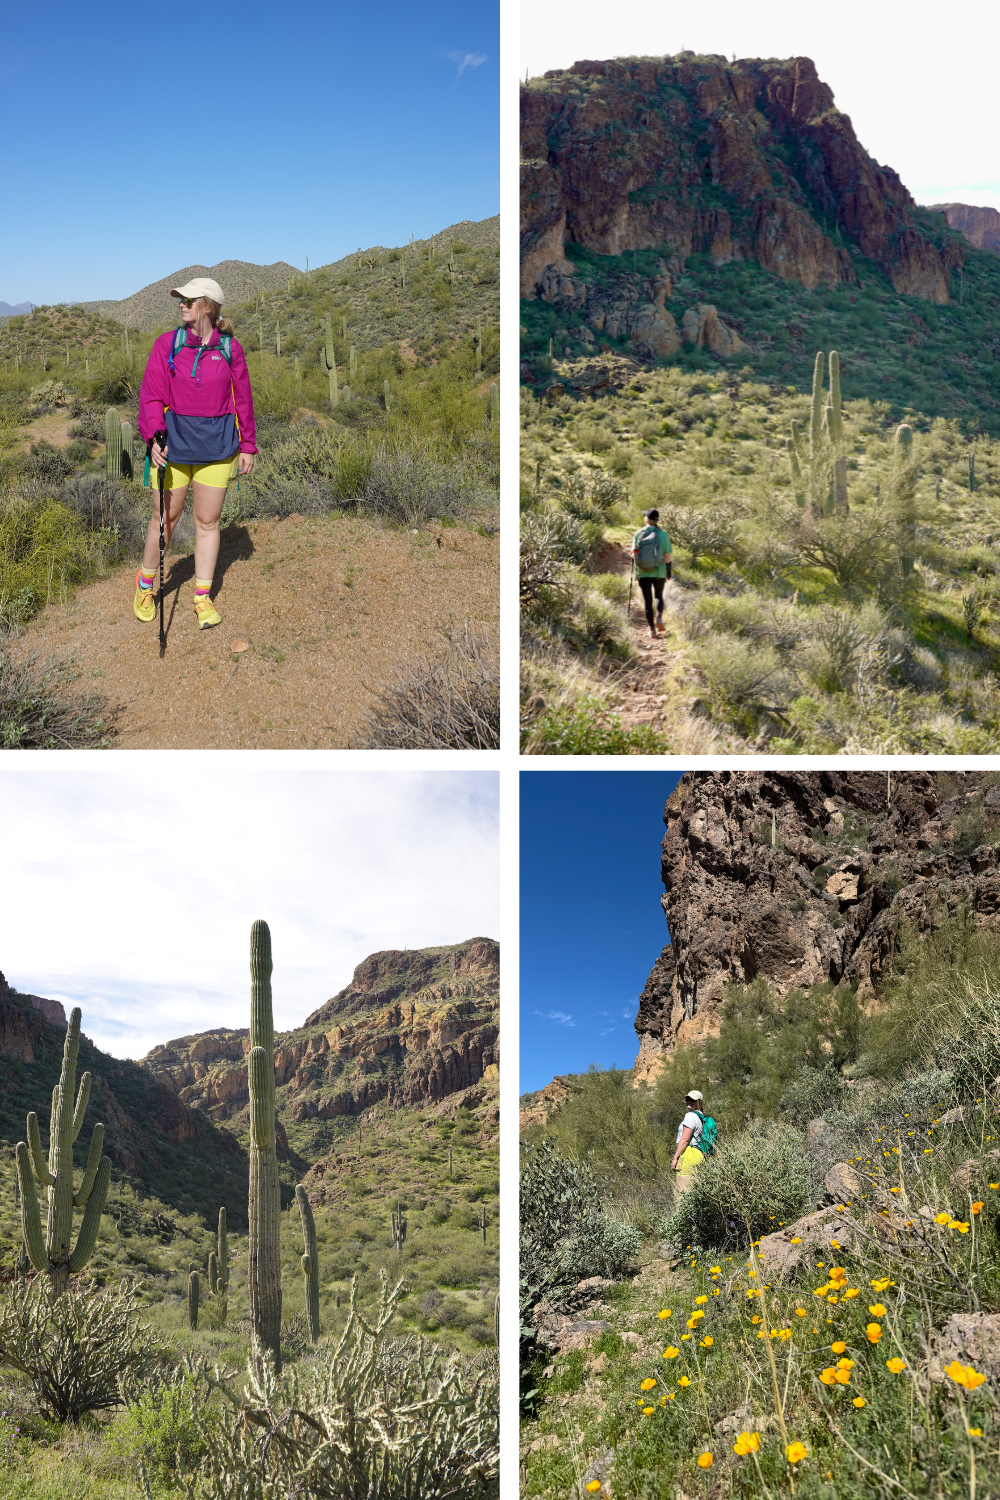 photos of a girl climbing up a canyon in a bright canyon